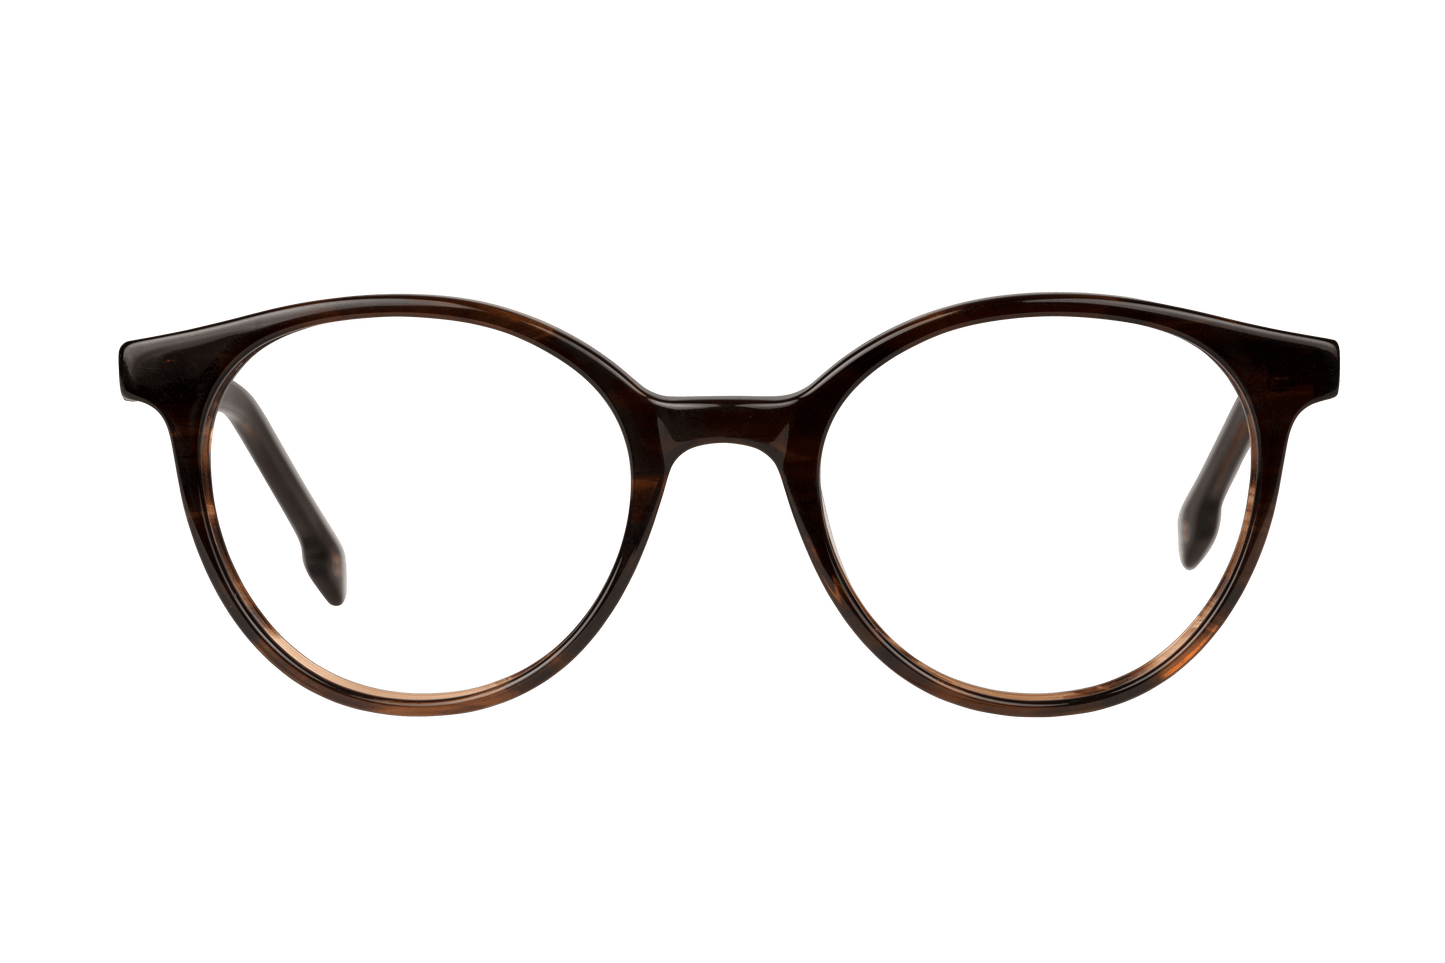 FLORA ECAILLE - lunettespourtous